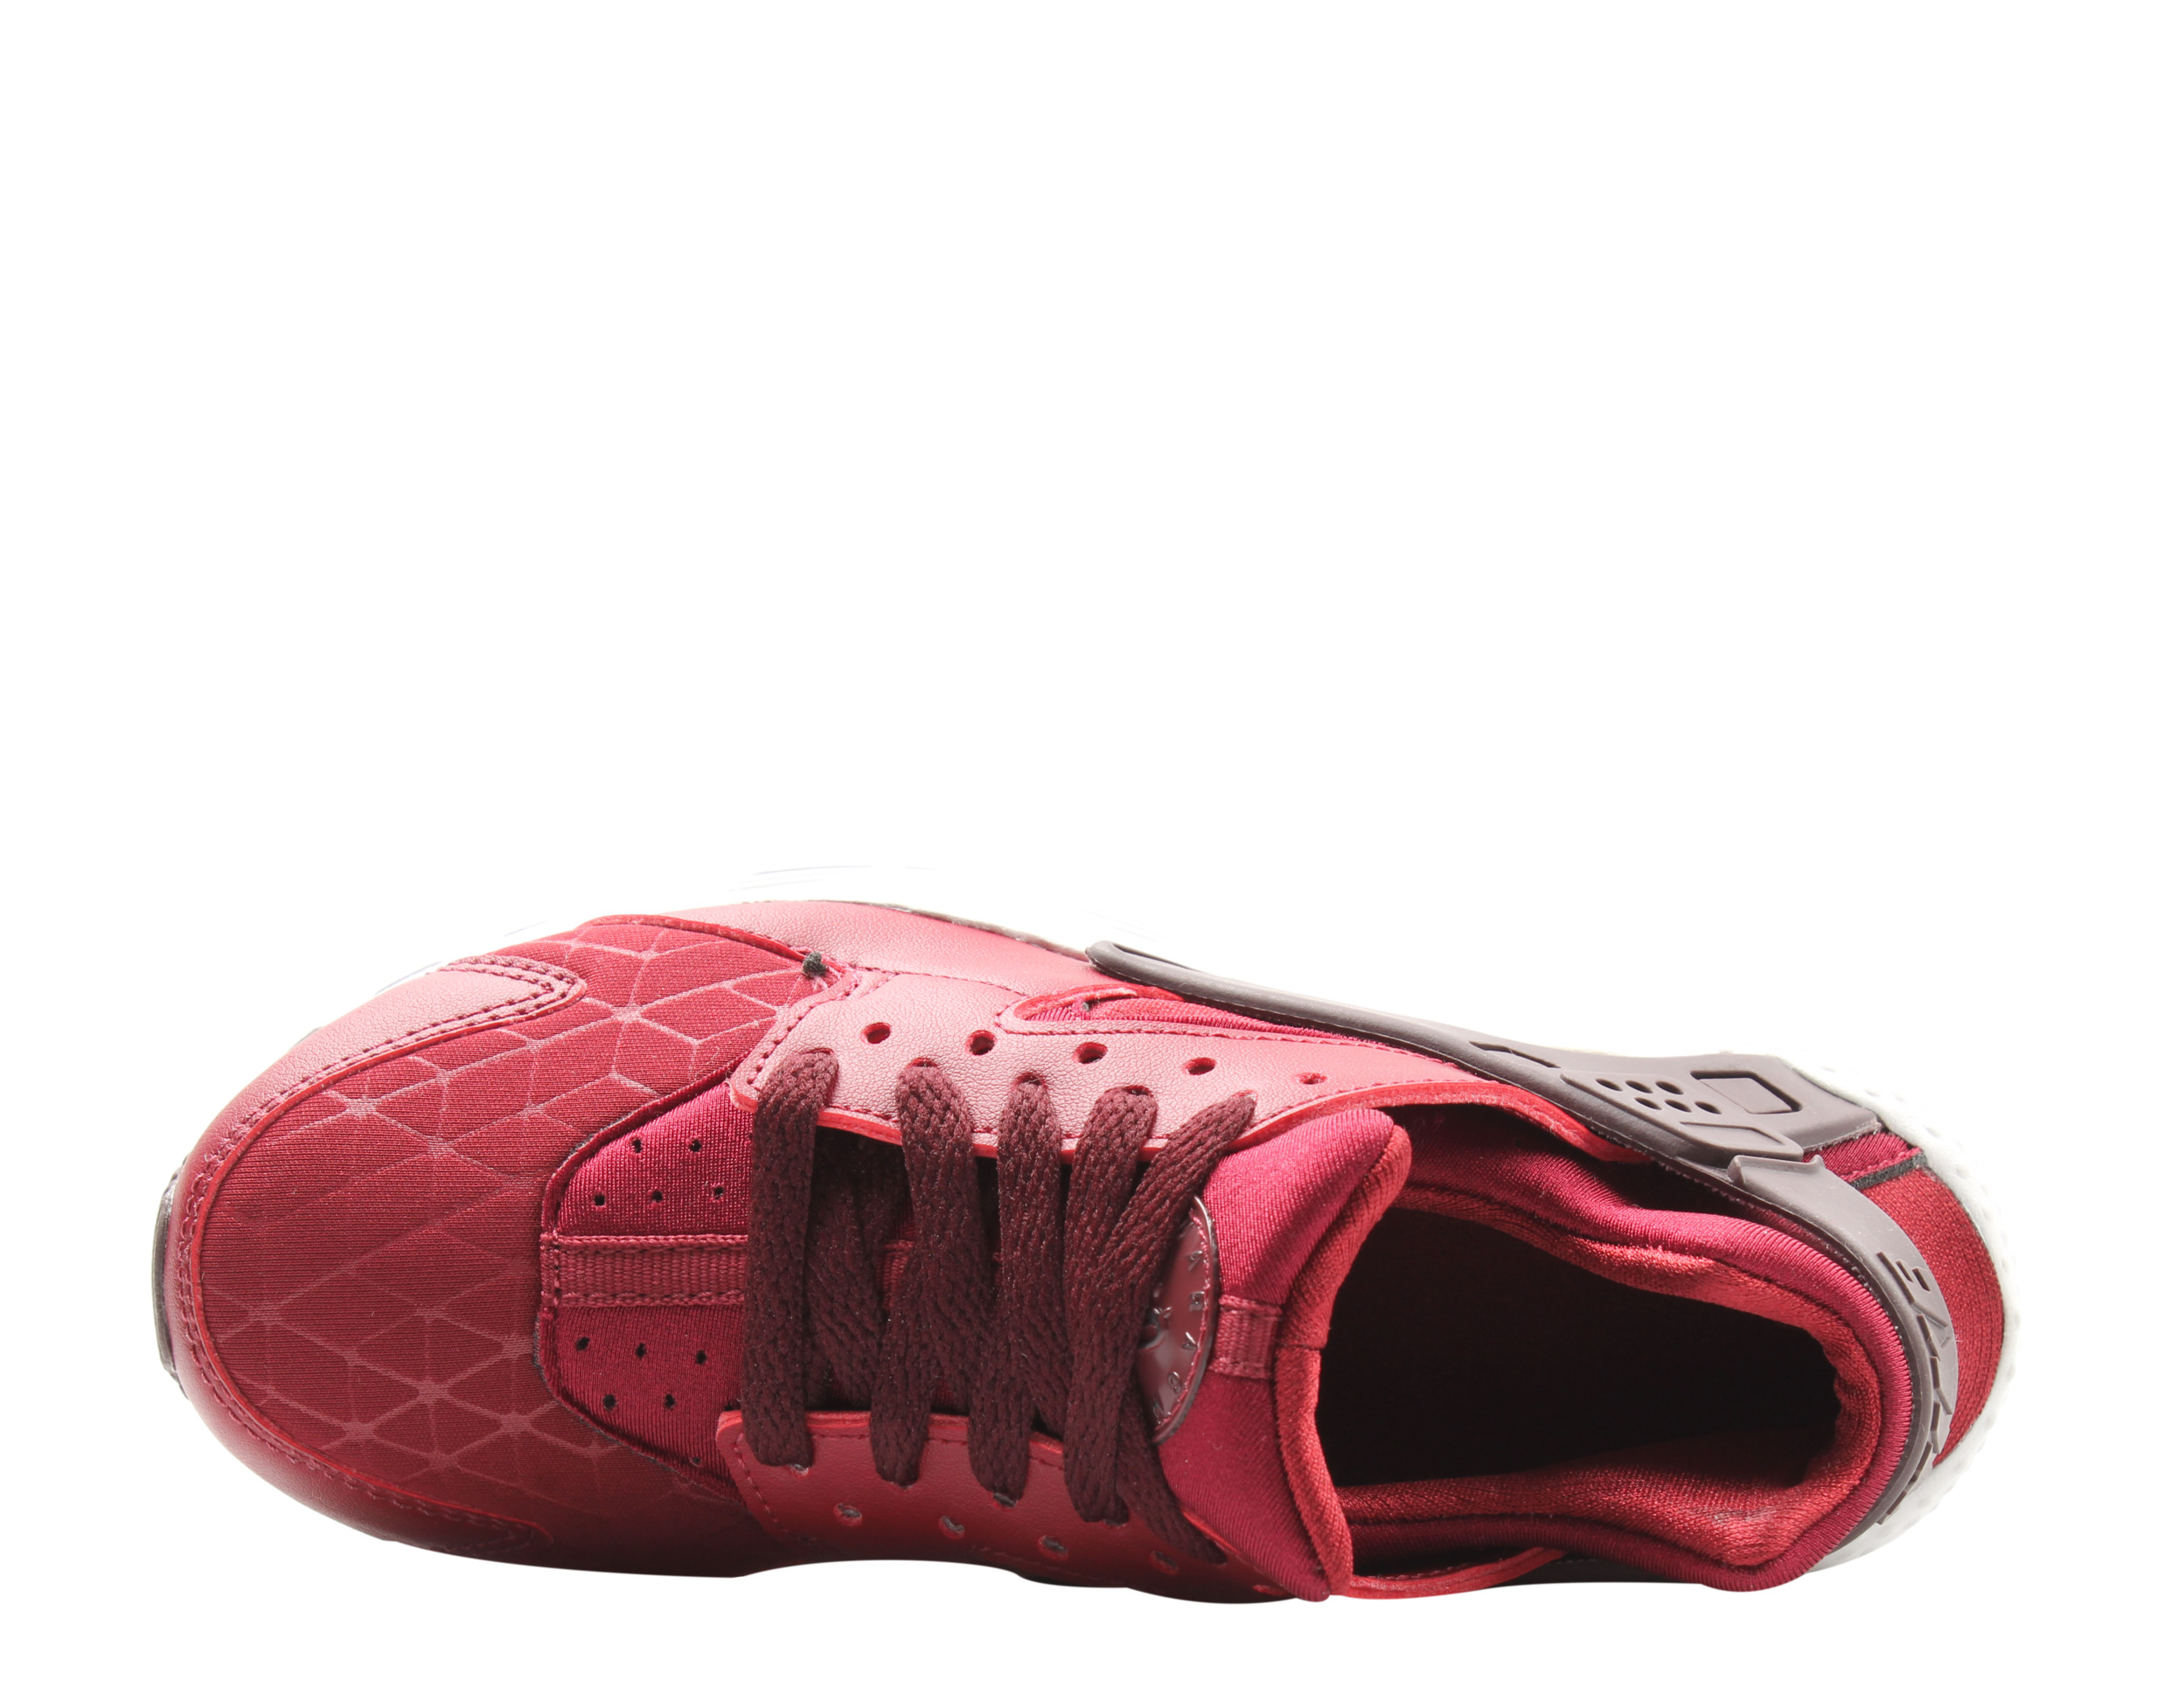 Nike Huarache Run TU (GS) Big Kids Running Shoes Size 3.5 - image 4 of 6